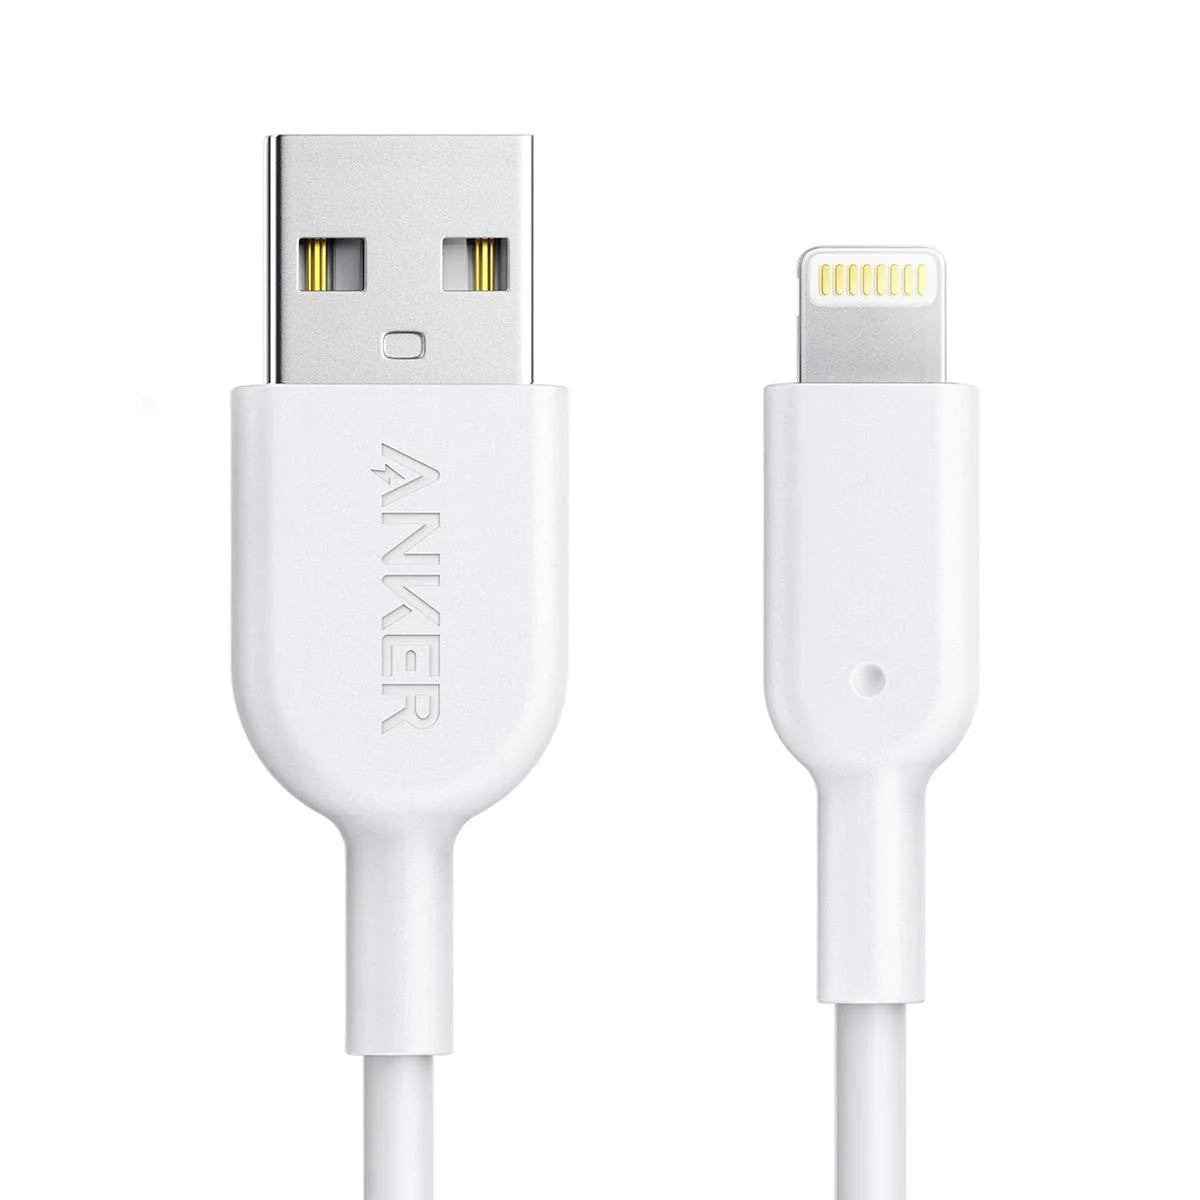 كابل Anker Powerline II USB-A إلى Lightning بطول 1.8 متر - أبيض مع ضمان رسمي لمدة 18 شهرًا